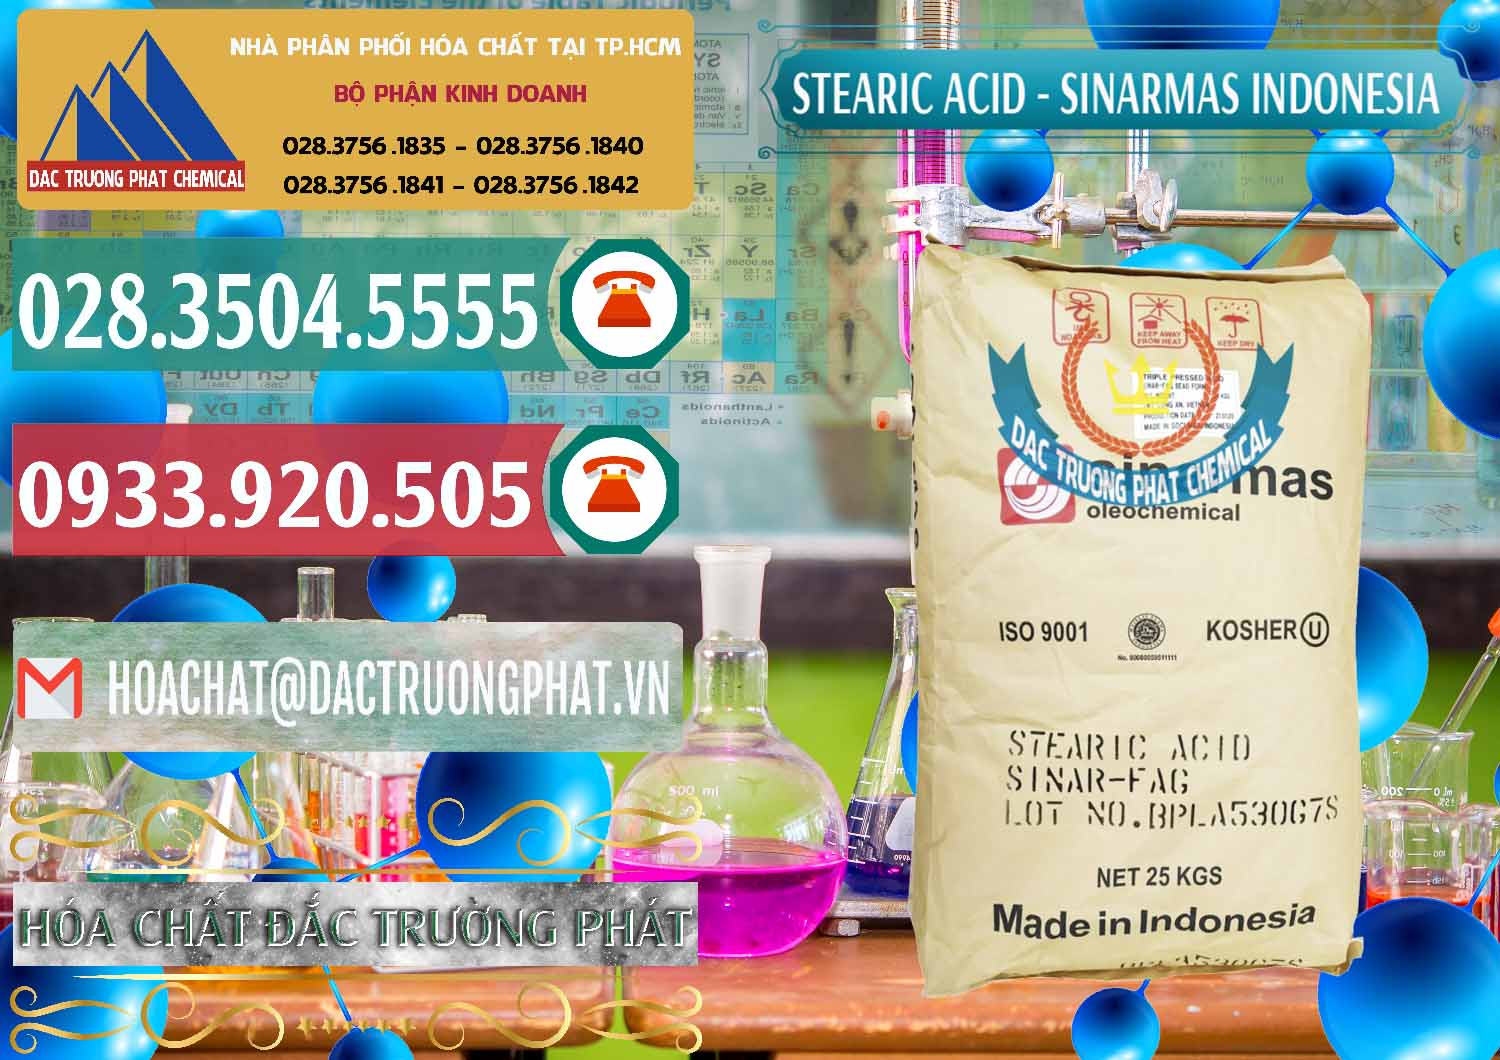 Nơi chuyên nhập khẩu và bán Axit Stearic - Stearic Acid Sinarmas Indonesia - 0389 - Cty cung ứng & phân phối hóa chất tại TP.HCM - muabanhoachat.vn